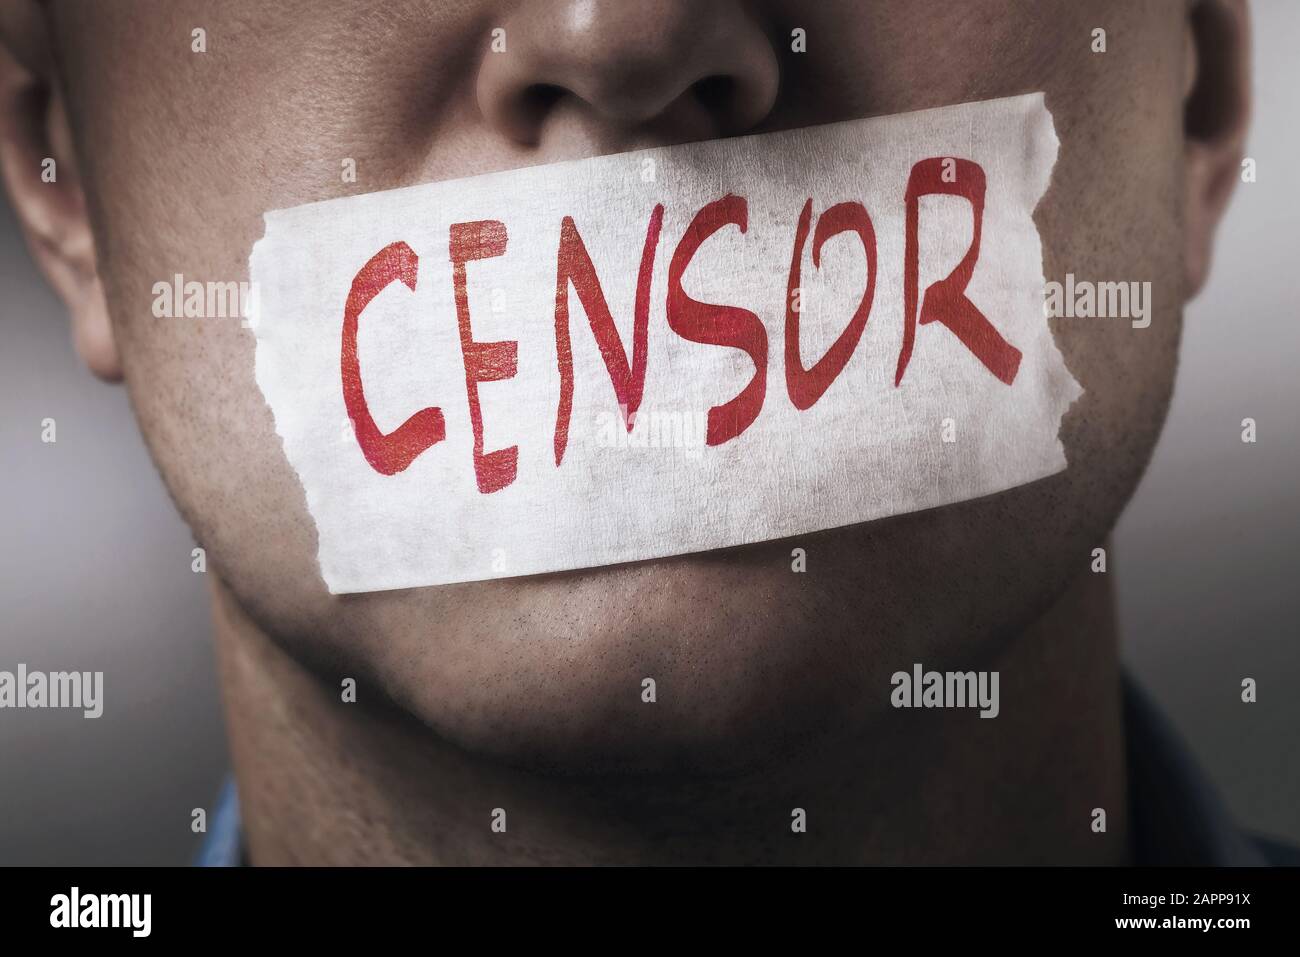 Una boca de personas está sellada con cinta de enmascarar, cierre. El concepto de censura en la sociedad. Foto de stock